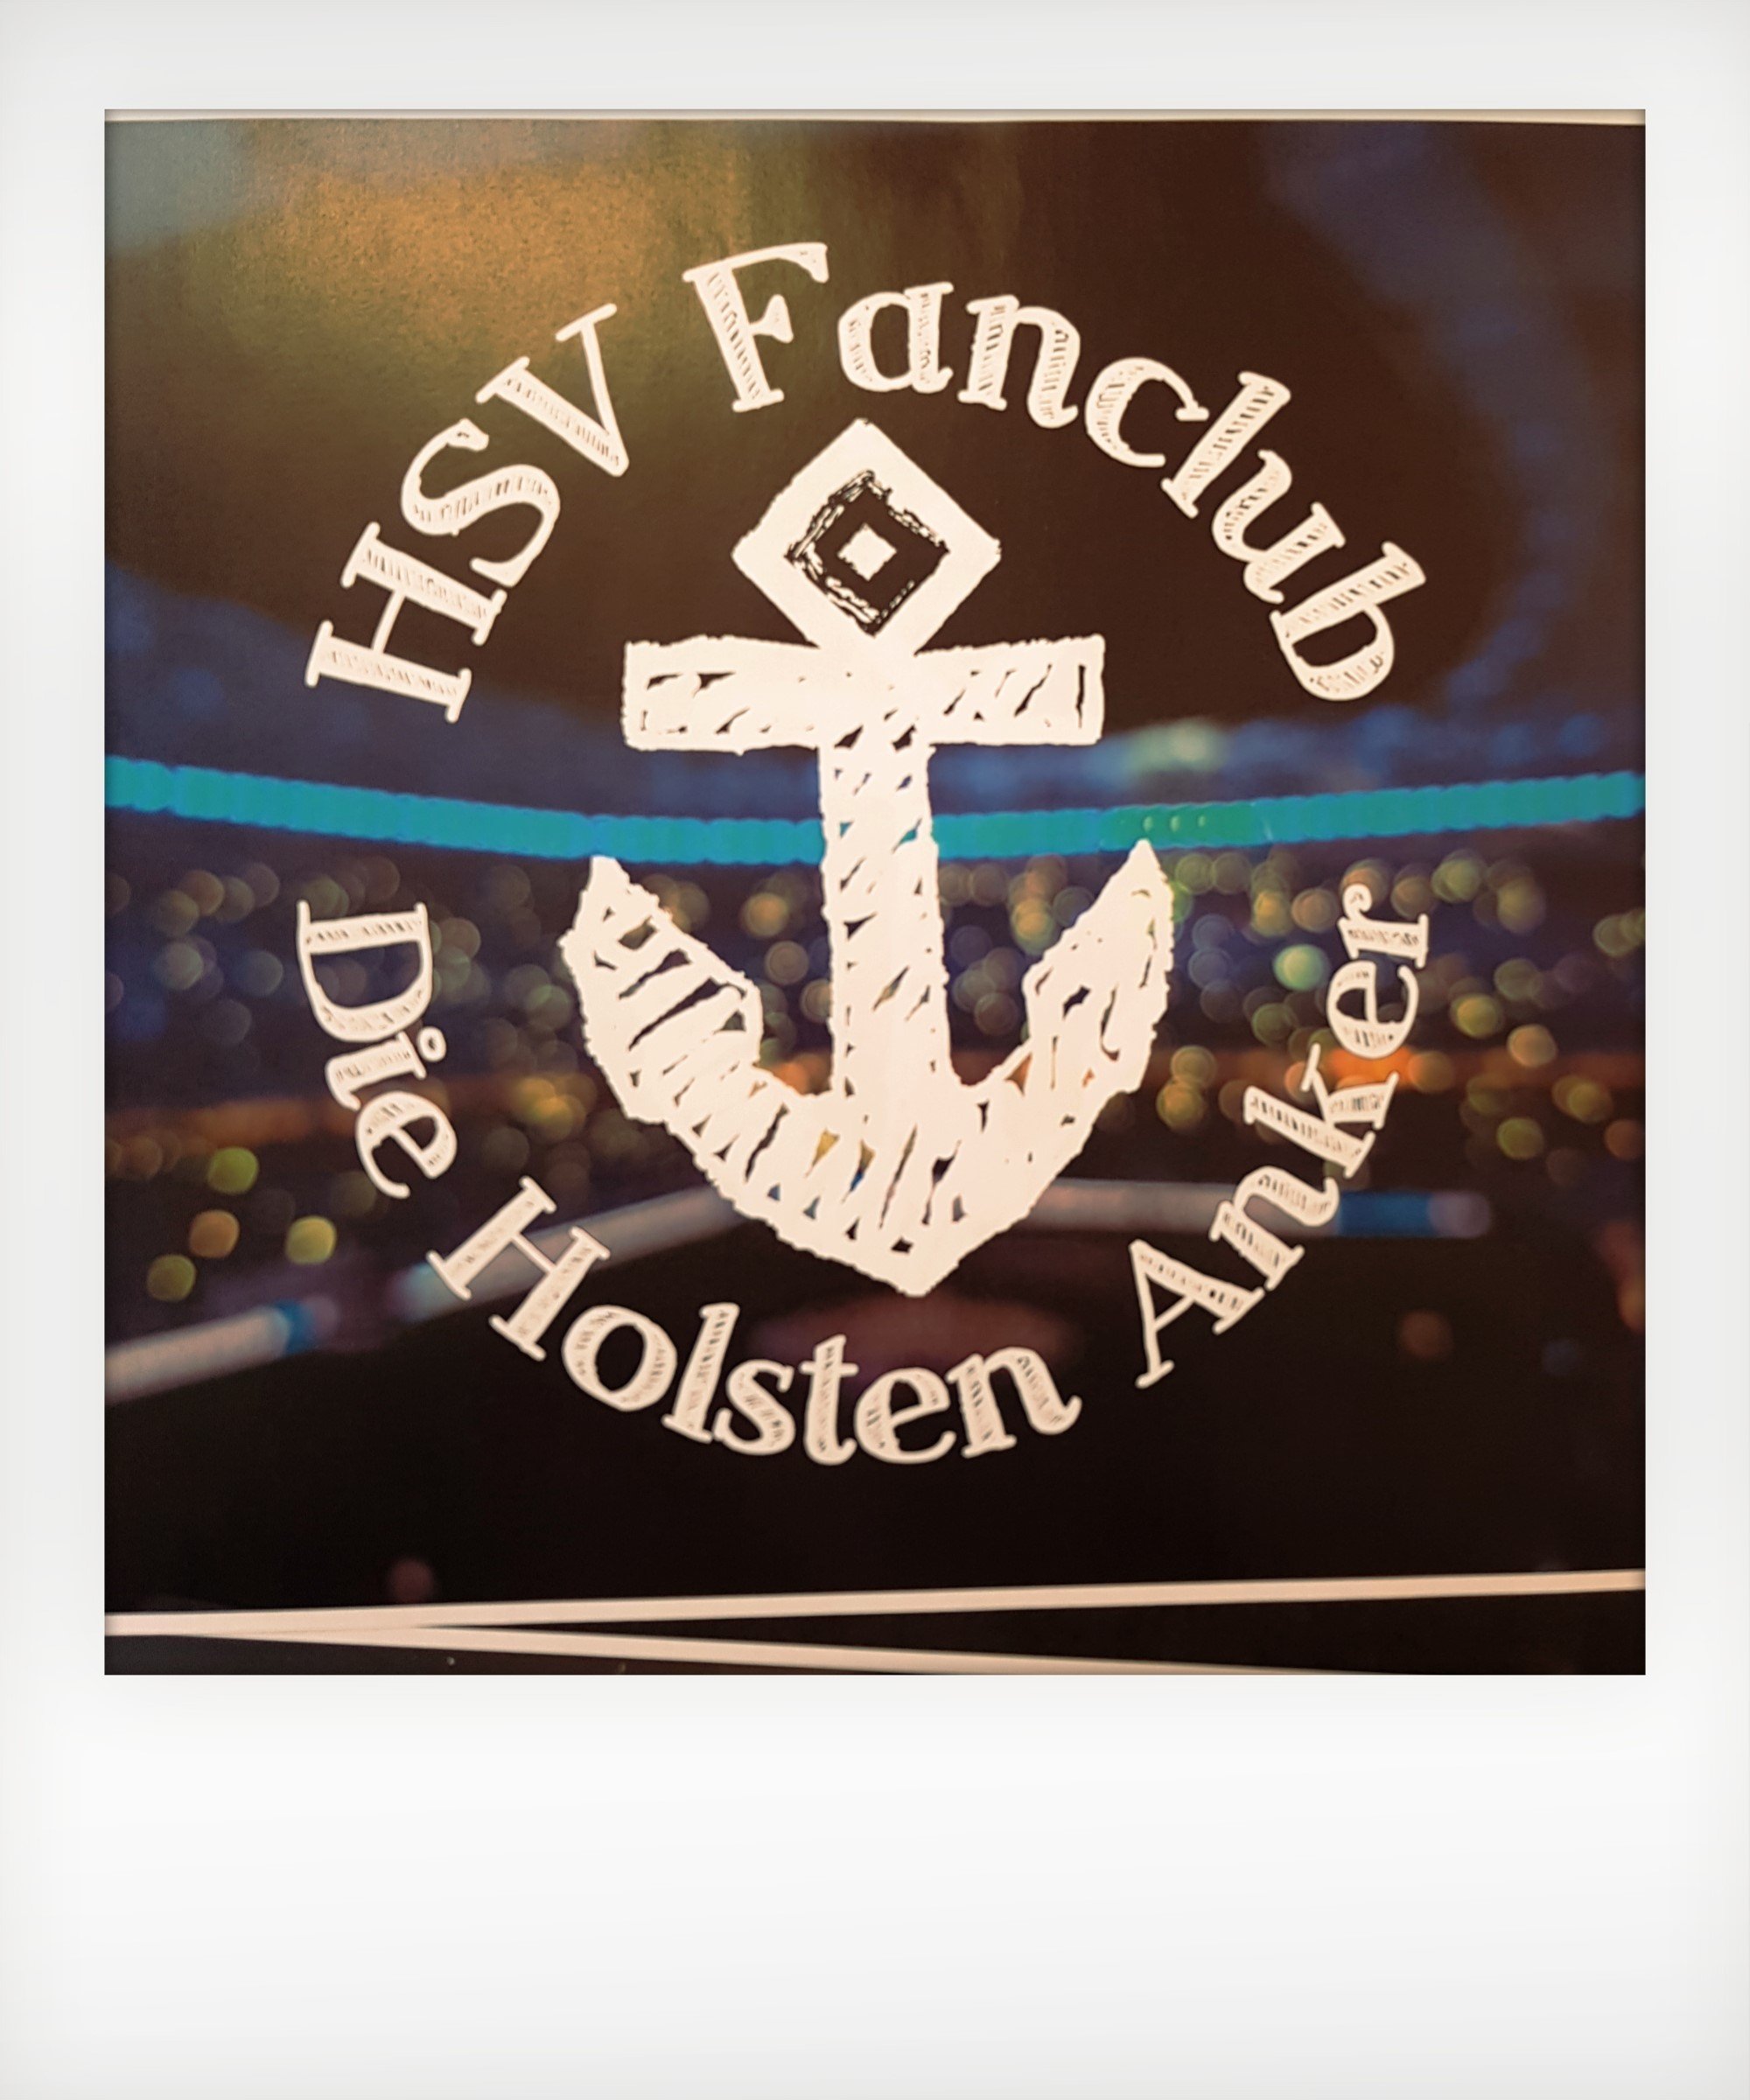 Foto: vorläufiges Logo HSV Fanclub. Mittig Anker, darum herum Schriftzug: HSV Fanclub Die Holsten Anker. Im Hintergrund Stadion